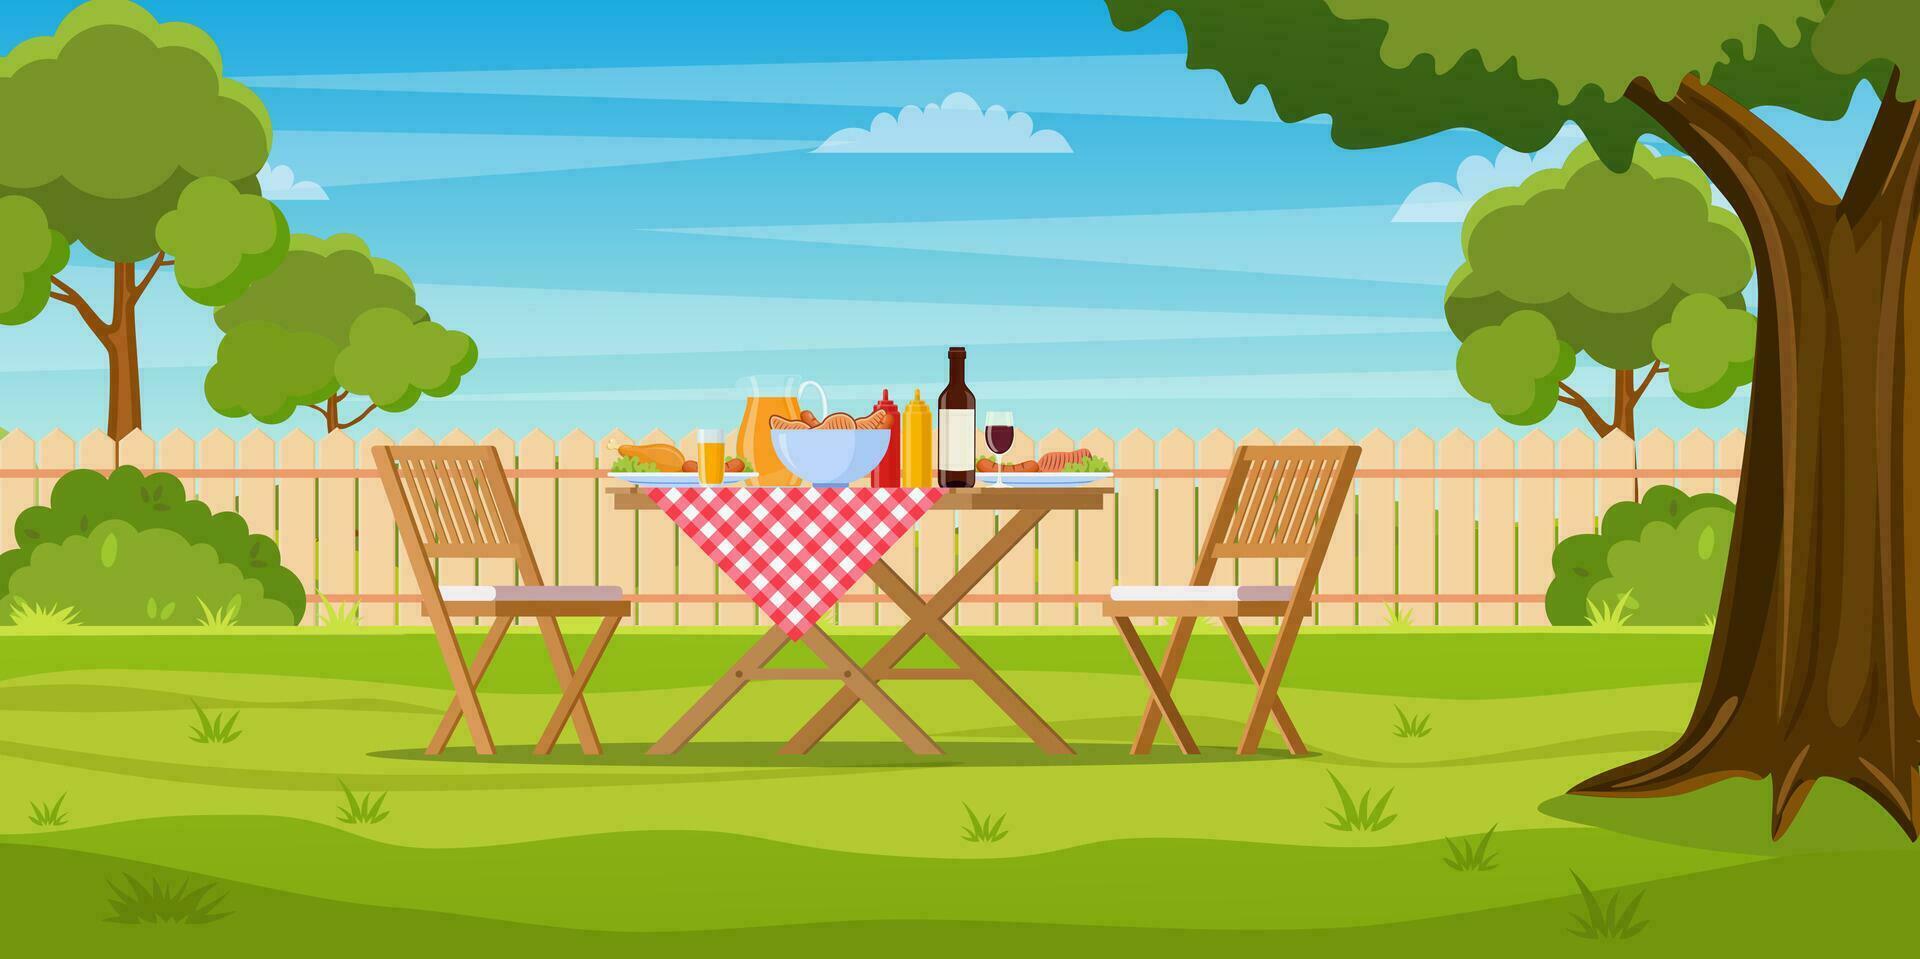 utegrill fest i de bakgård med staket, träd, buskar. picknick med utegrill på sommar gräsmatta i parkera eller trädgård mat på tabell, stolar. vektor illustration i platt design